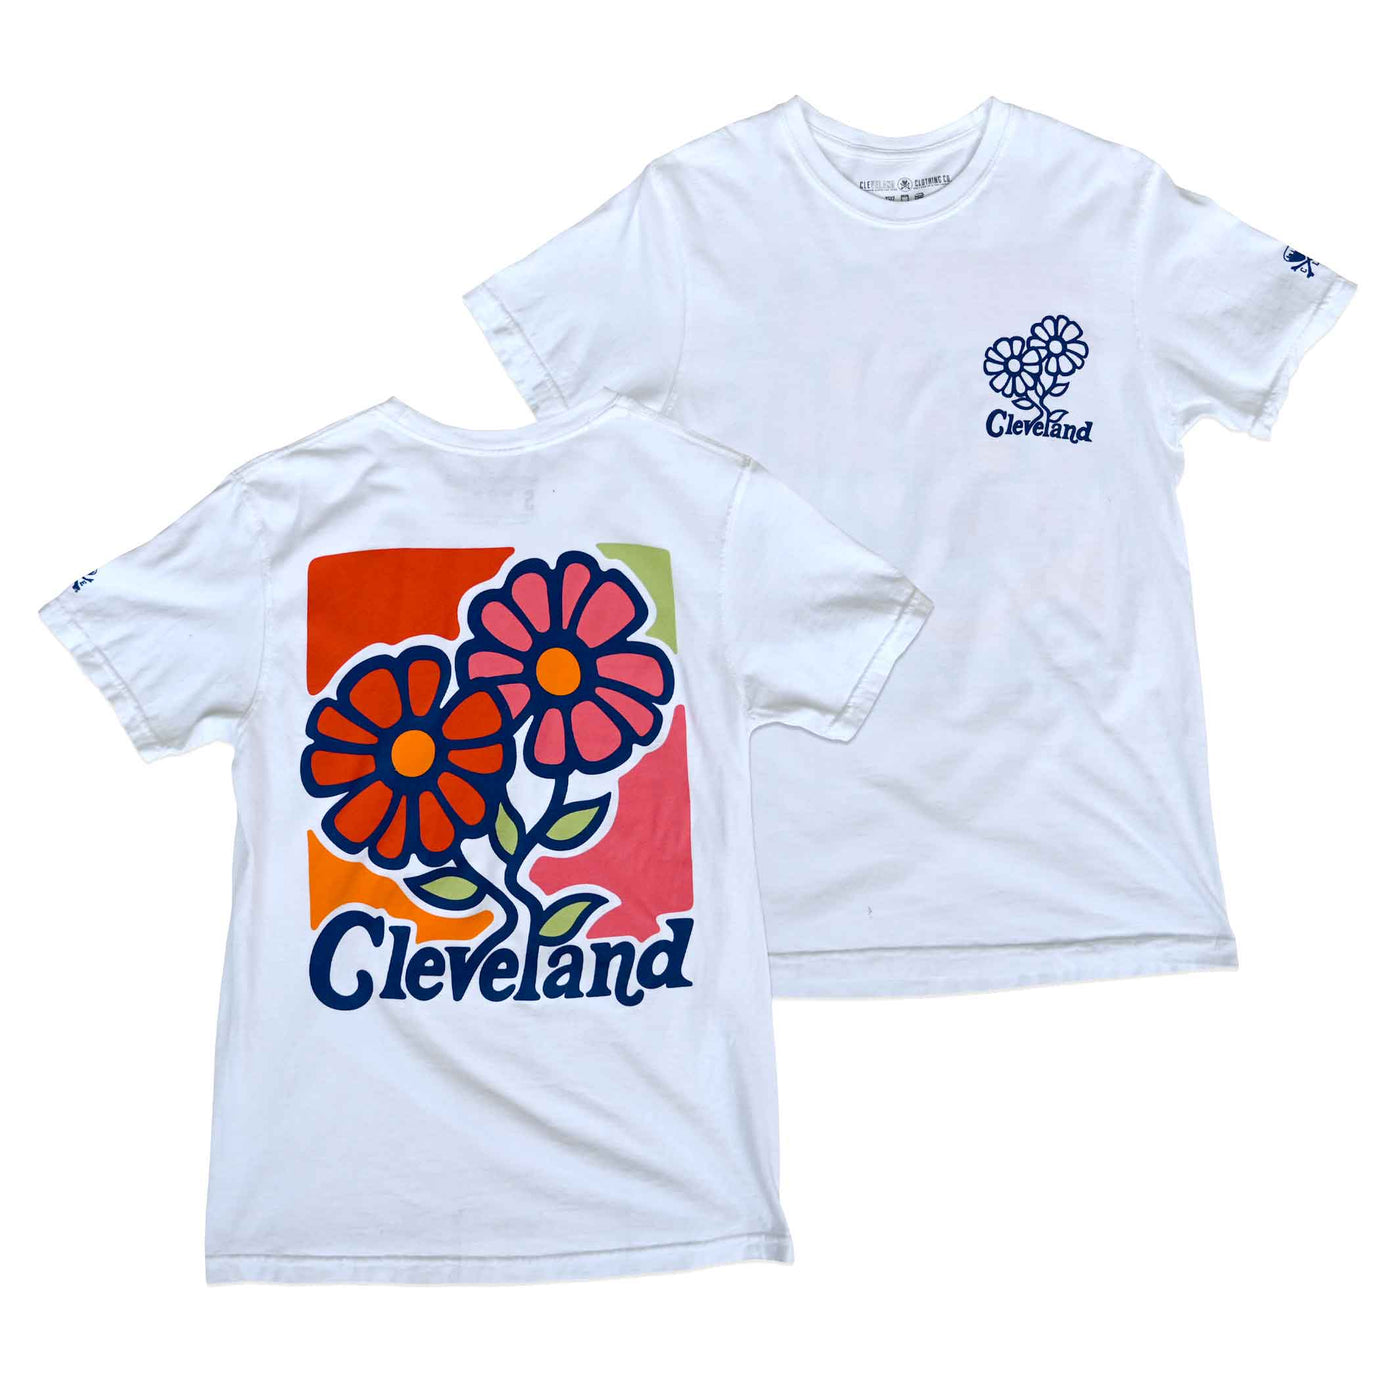 Cleveland Shirt Ohio Shirt the Land Tshirt Cleveland -  Sweden